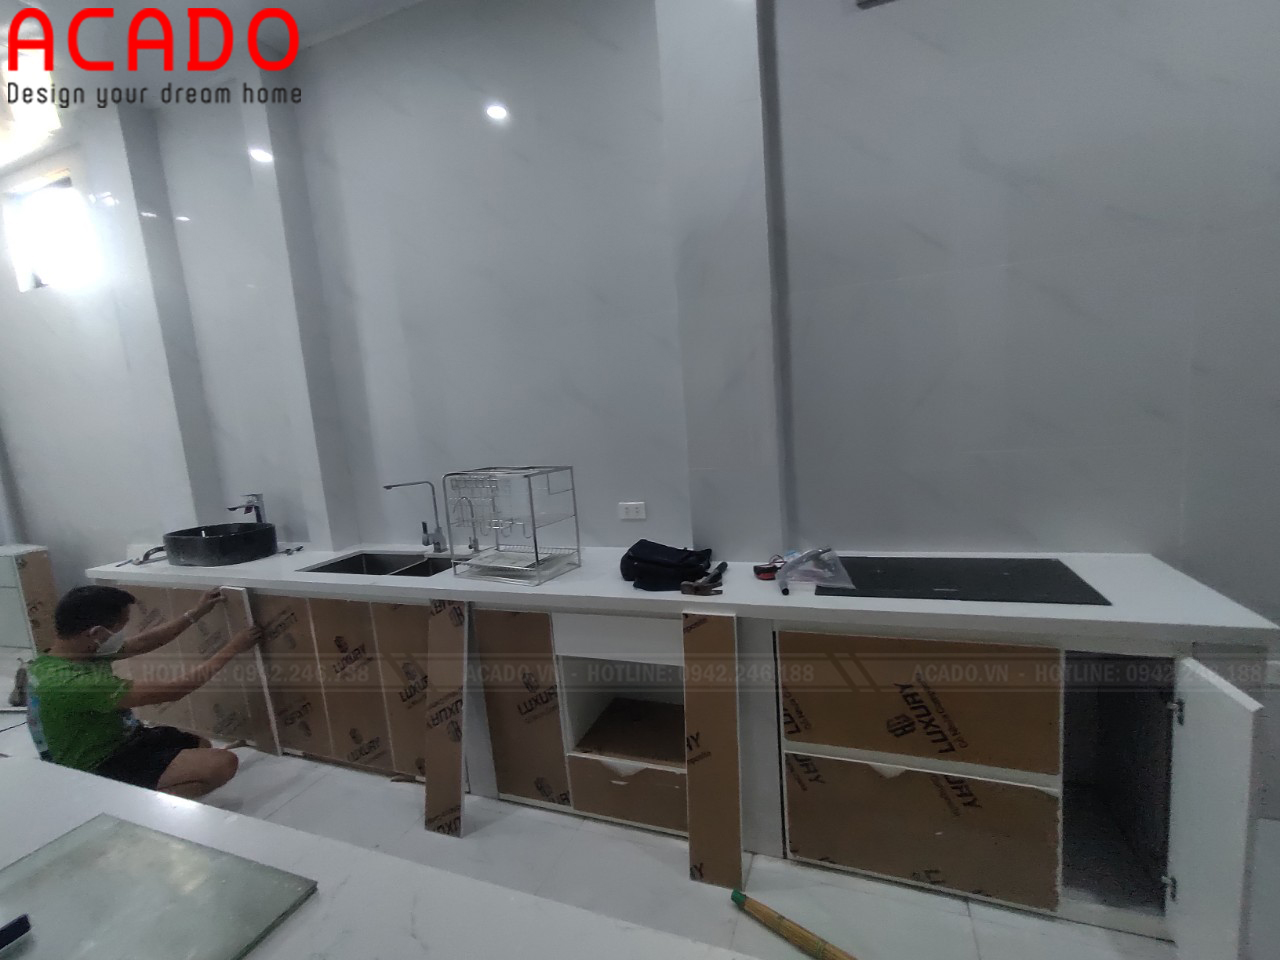 Hình ảnh quá trình lắp đặt tủ bếp tại Hòa Lạc -- Nội thất ACADO.